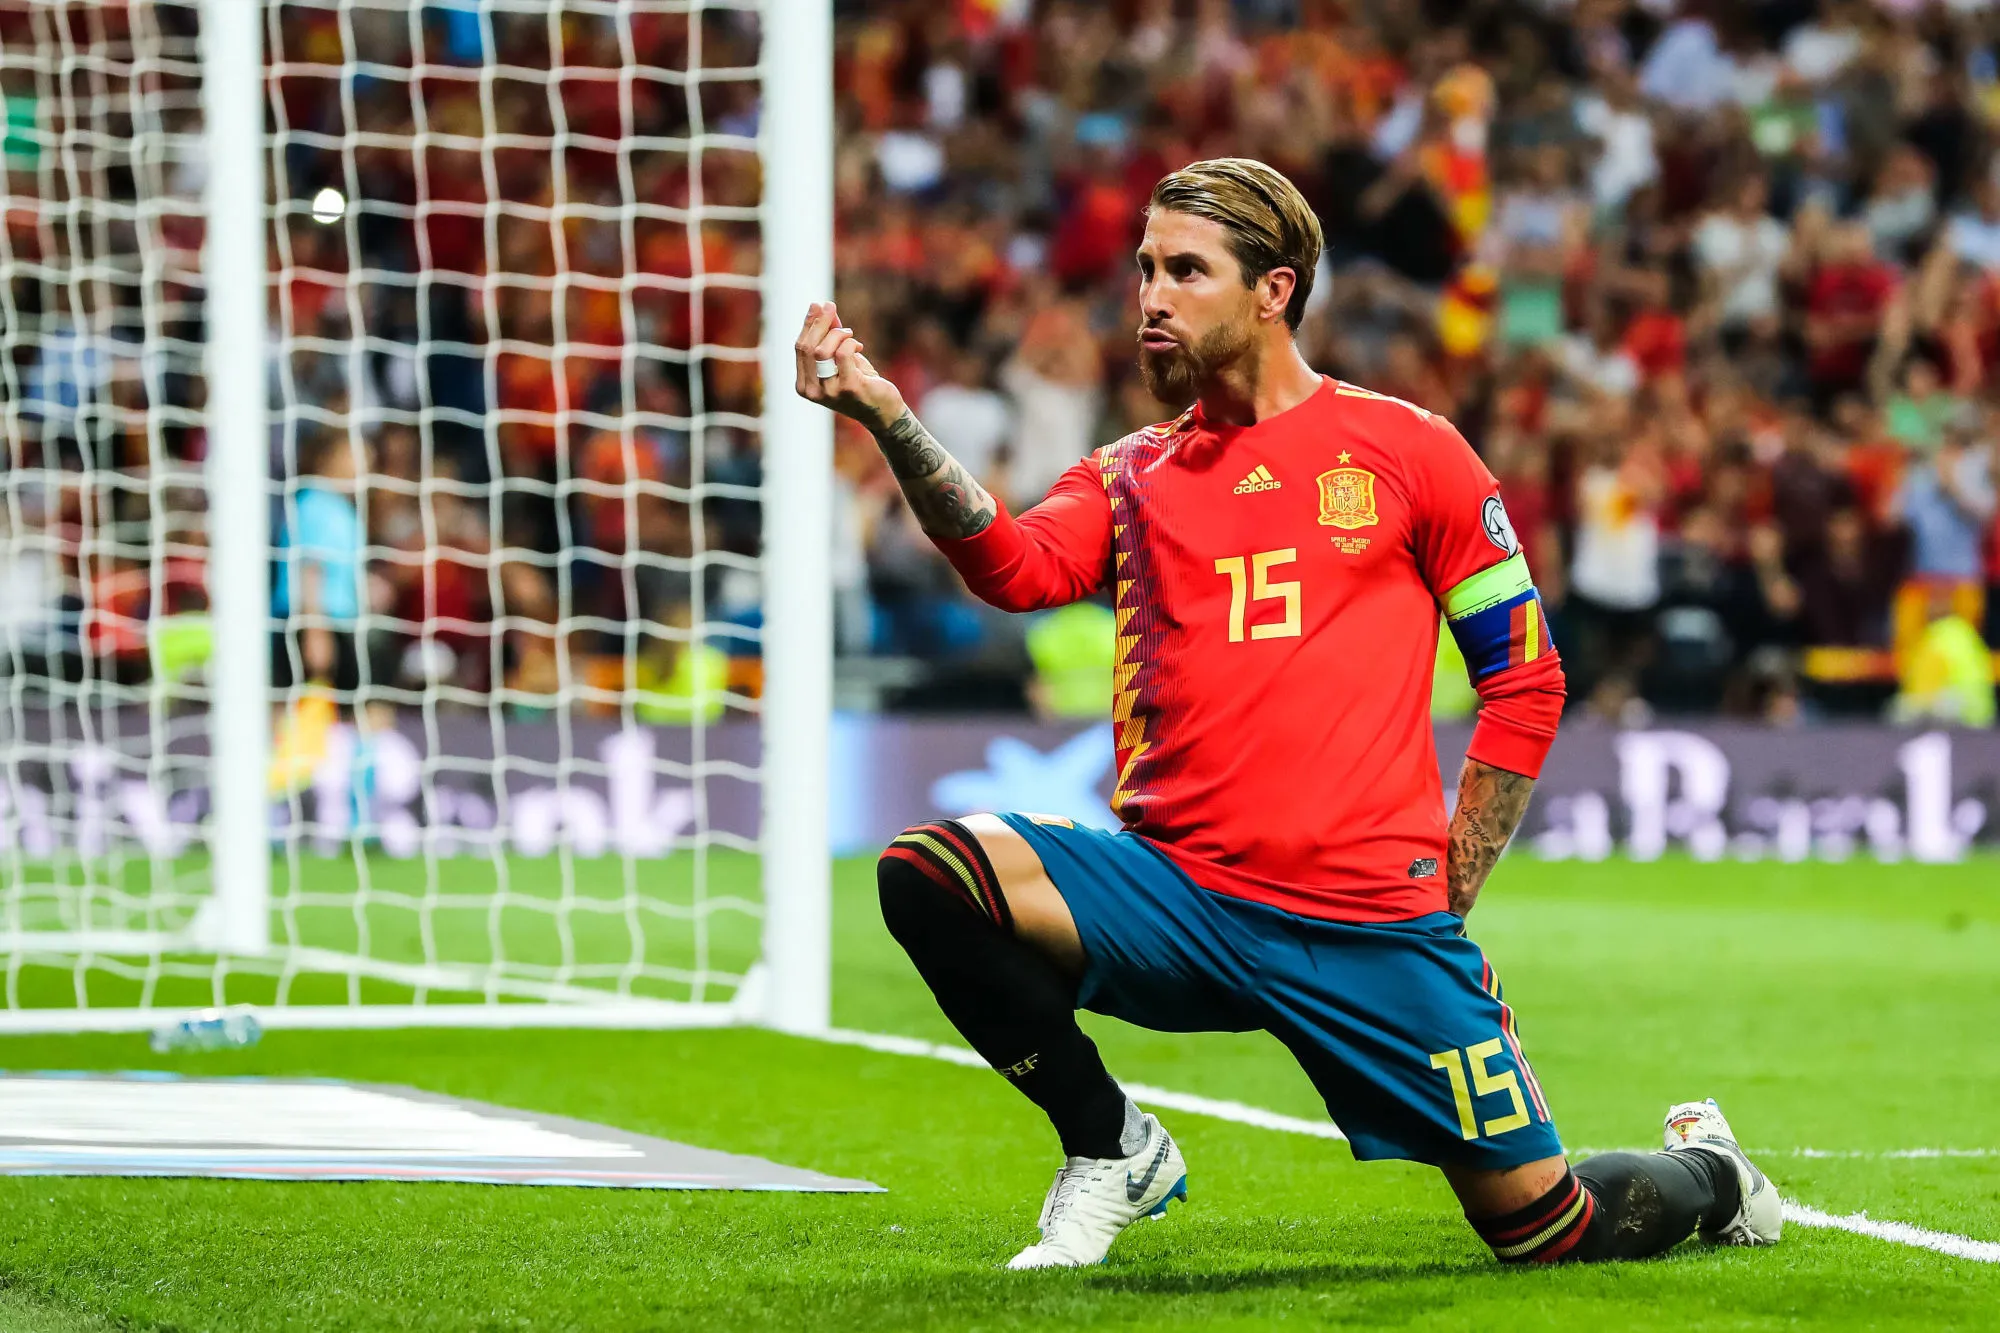 Pronostic Allemagne Espagne : Analyse, cotes et prono de la finale de Ligue des Nations A